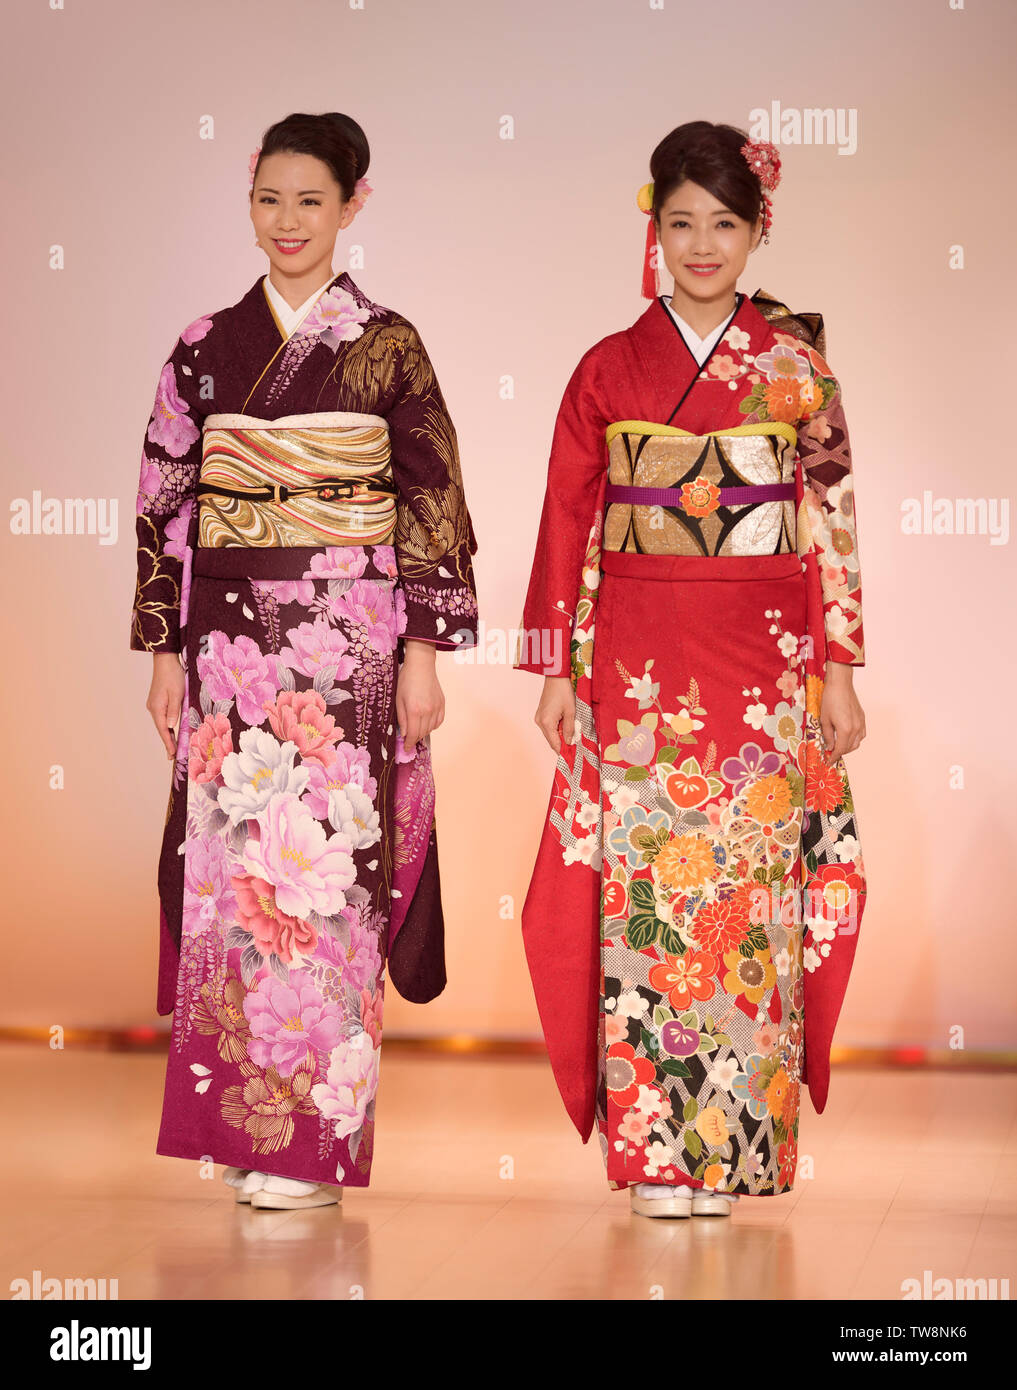 Licence disponible sur MaximImages.com - femmes japonaises dans un magnifique kimono rouge et violet coloré avec un motif floral lors d'un défilé de mode à Kyoto Banque D'Images